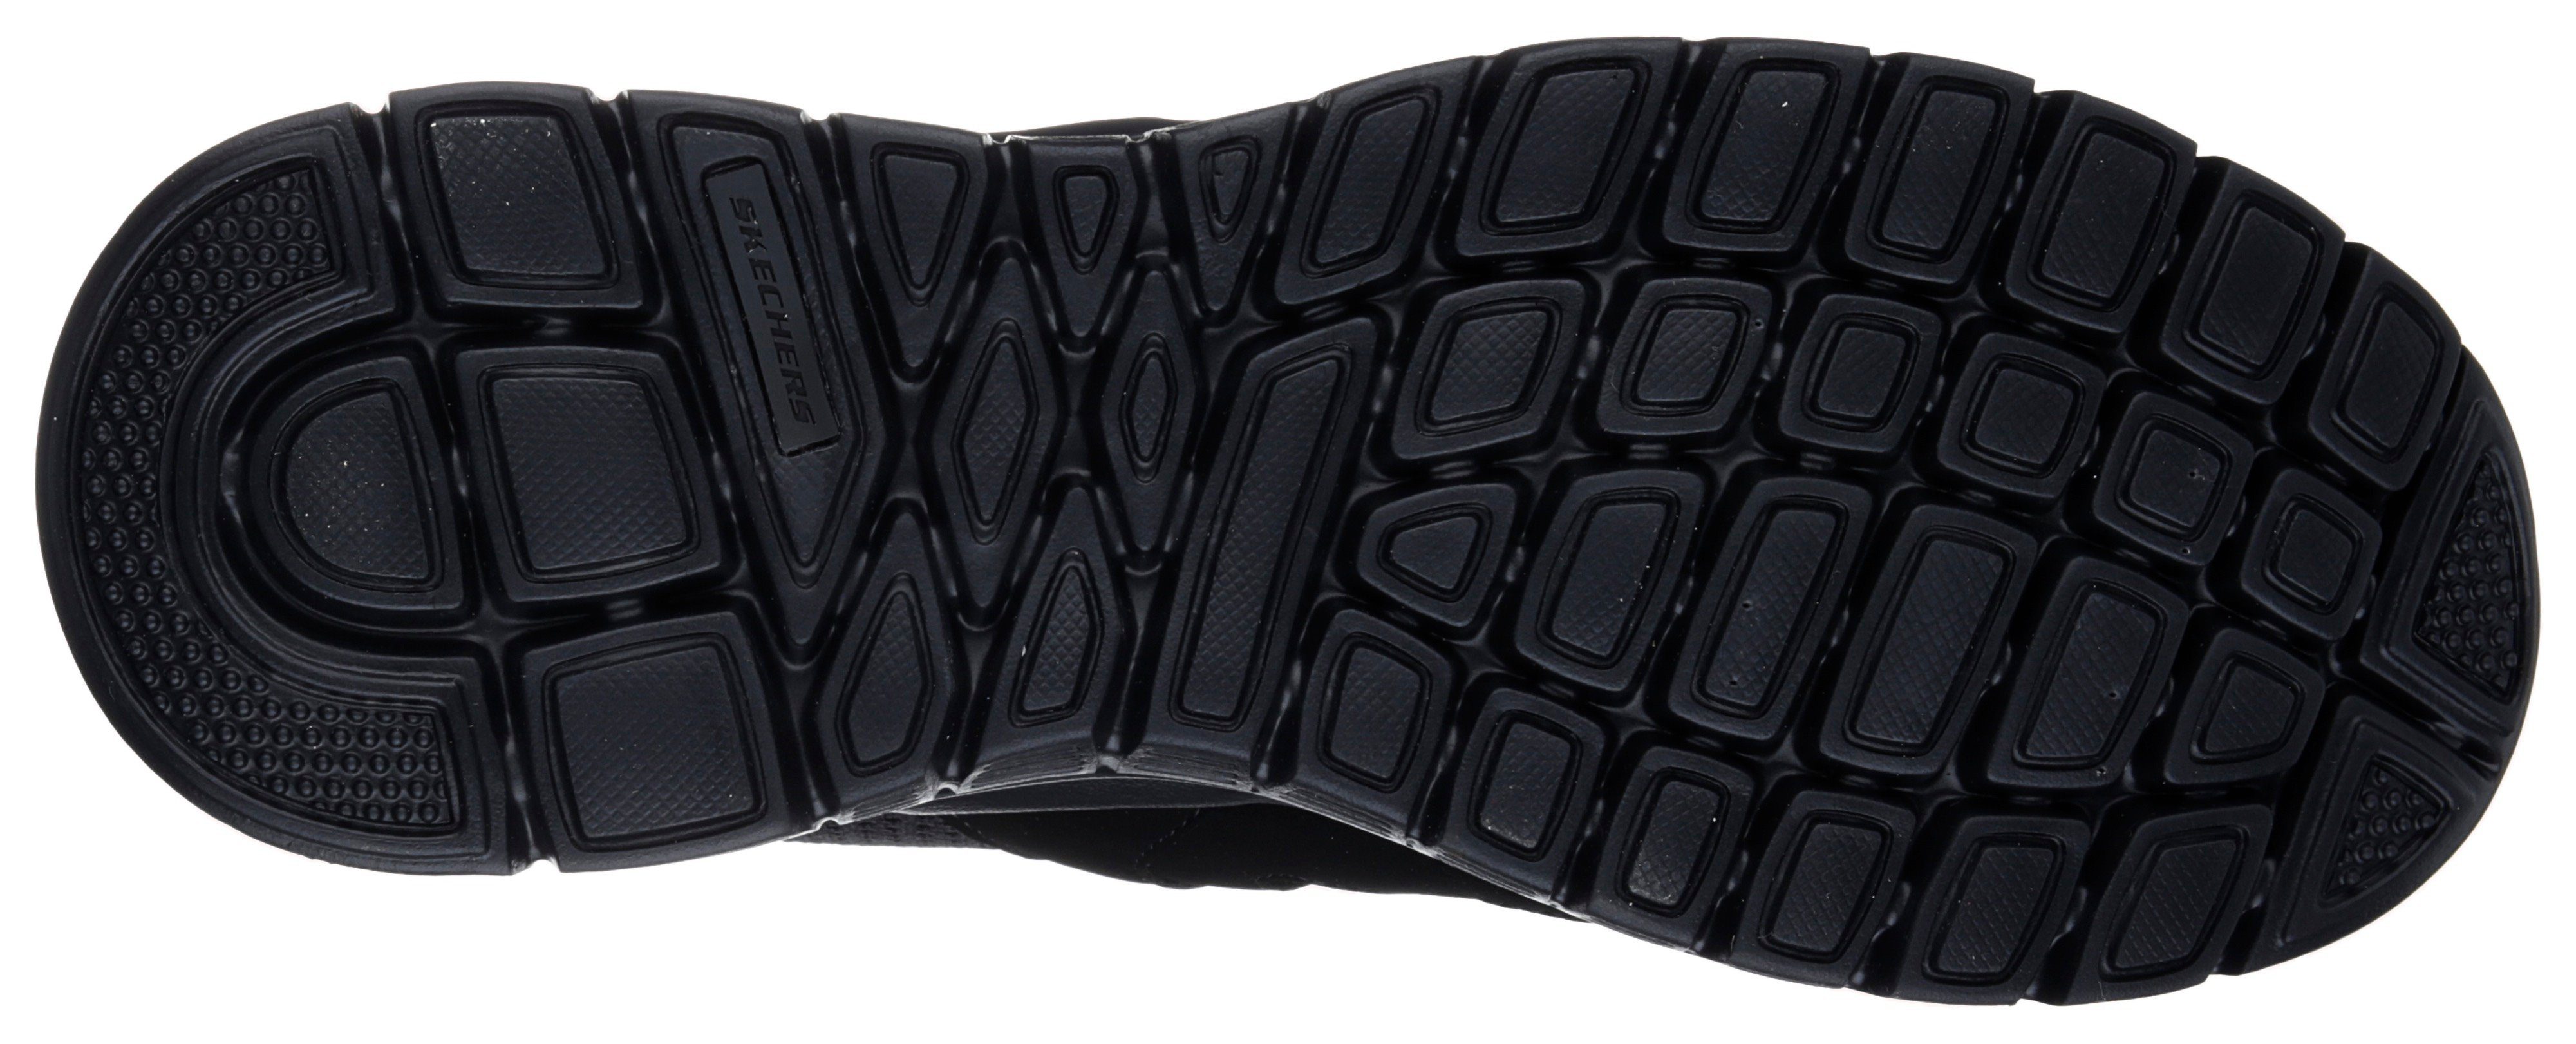 Skechers BURNS-AGOURA Sneaker im Look black/black monochromen